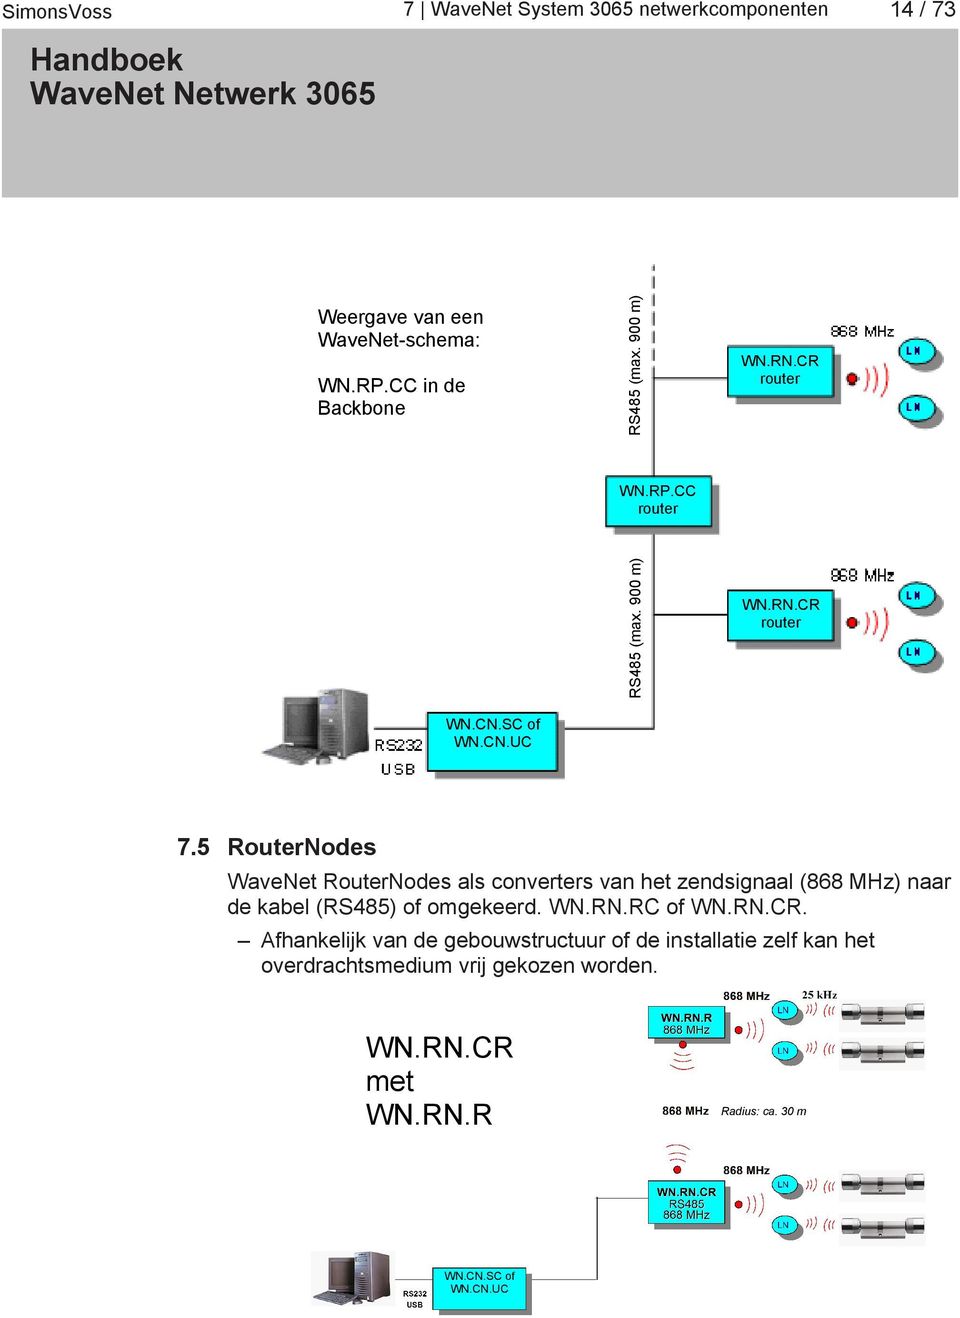 5 RouterNodes WaveNet RouterNodes als converters van het zendsignaal (868 MHz) naar de kabel (RS485) of omgekeerd. WN.RN.